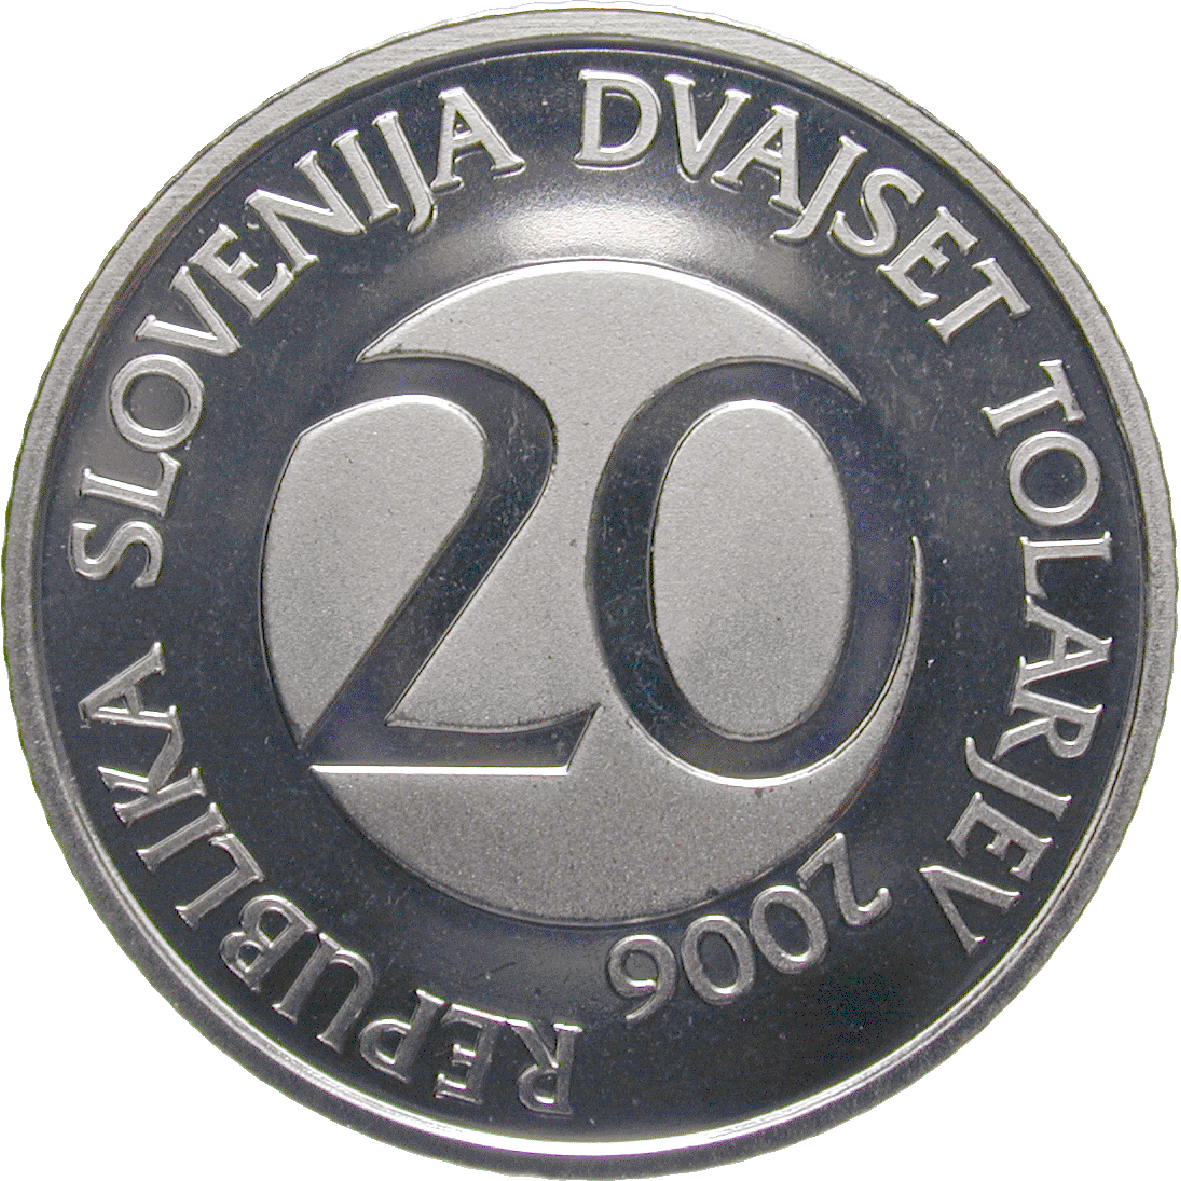 Republic of Slovenia, 20 Tolar 2006 (obverse)